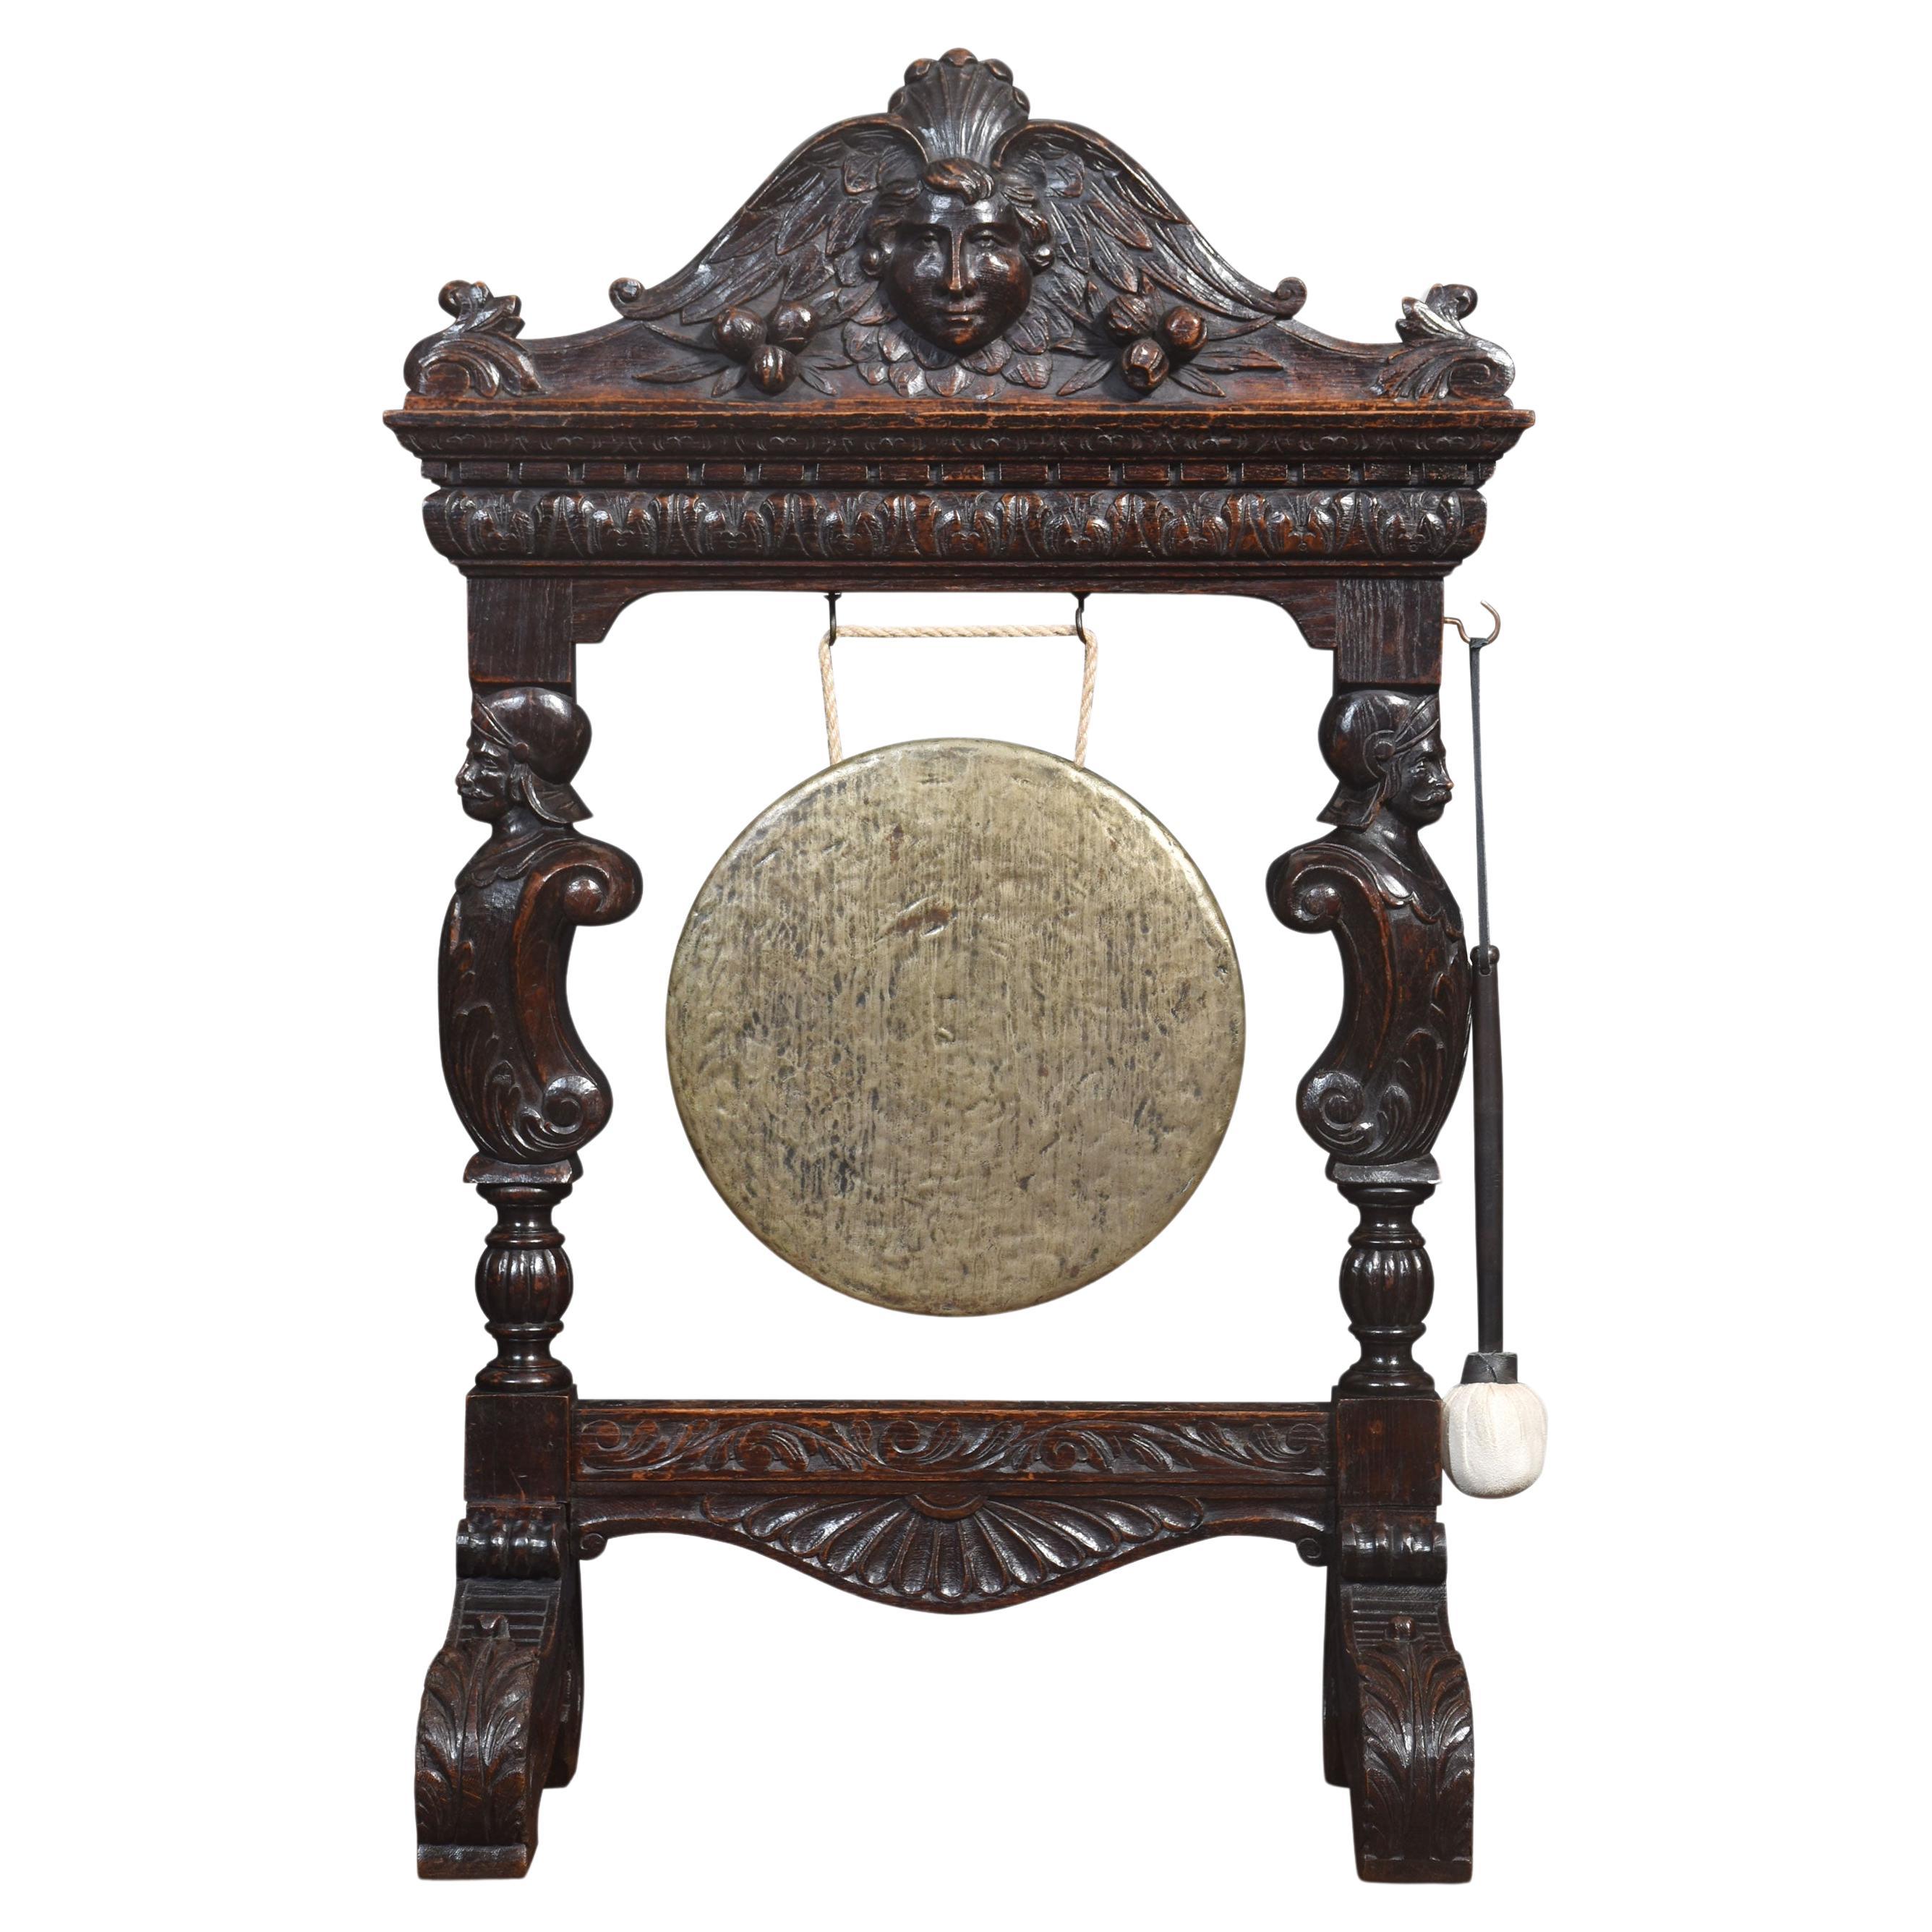 Carved oak dinner gong